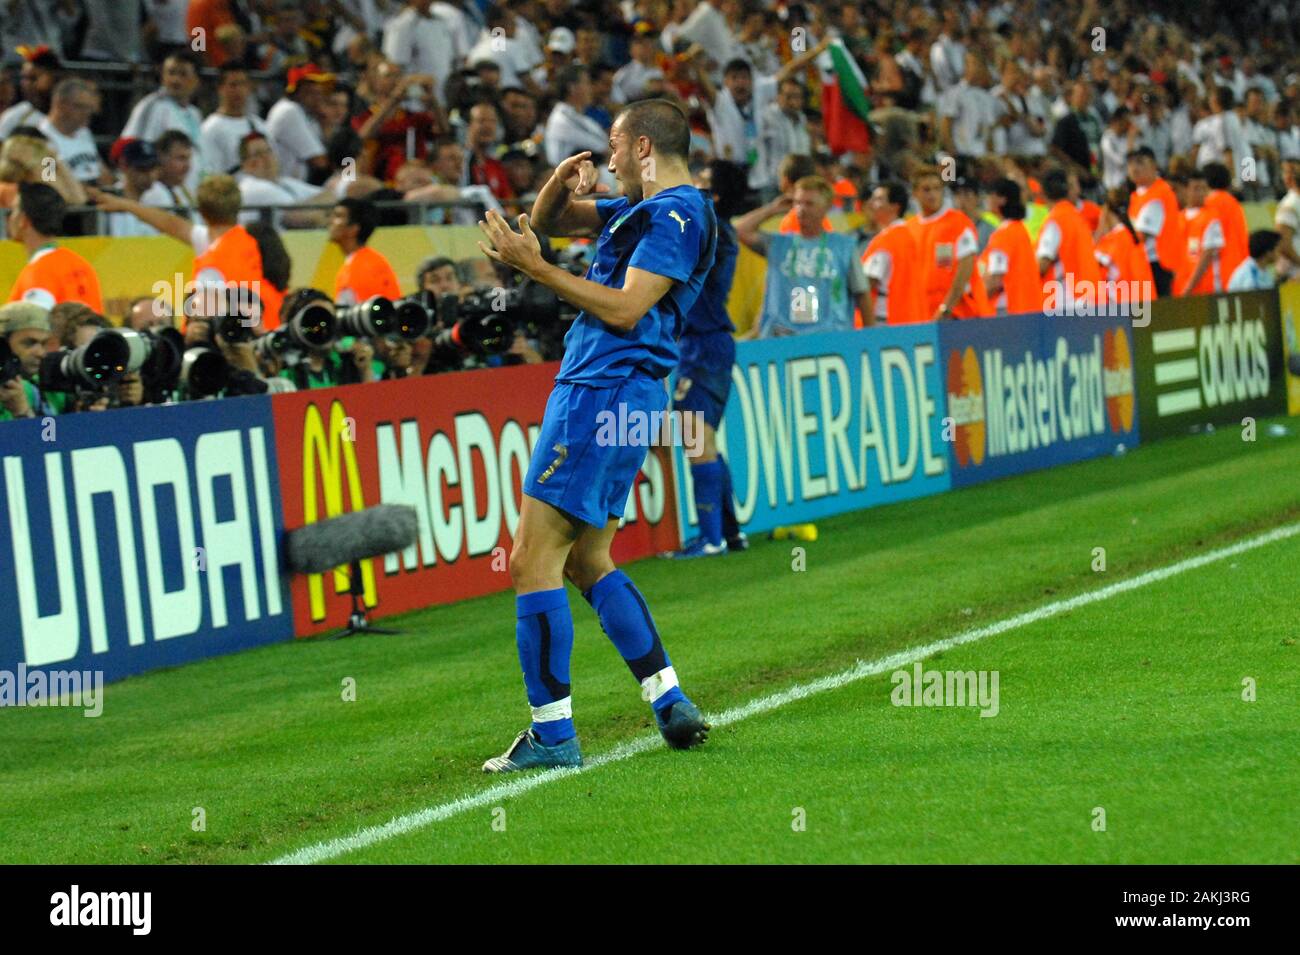 Dortmund Germania, 4 luglio 2006 FIFA World Cup Germany 2006, Germany-Italy semi-finale presso il Westfalenstadion: Alessandro Del Piero celebrare l'obiettivo Foto Stock